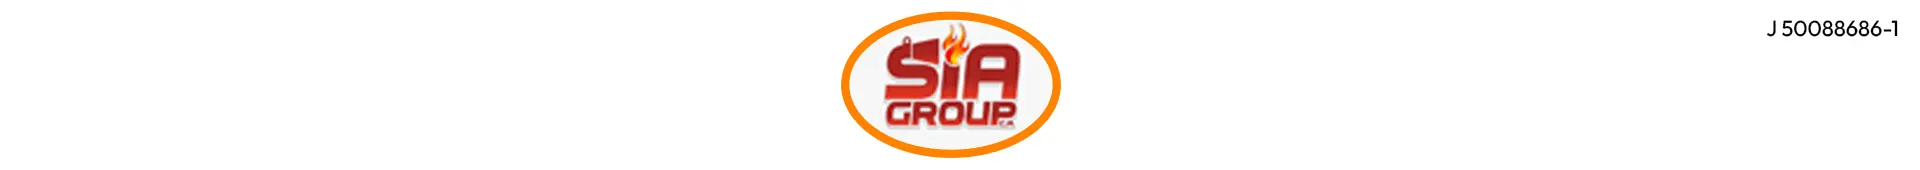 Imagen 1 del perfil de Sia Group